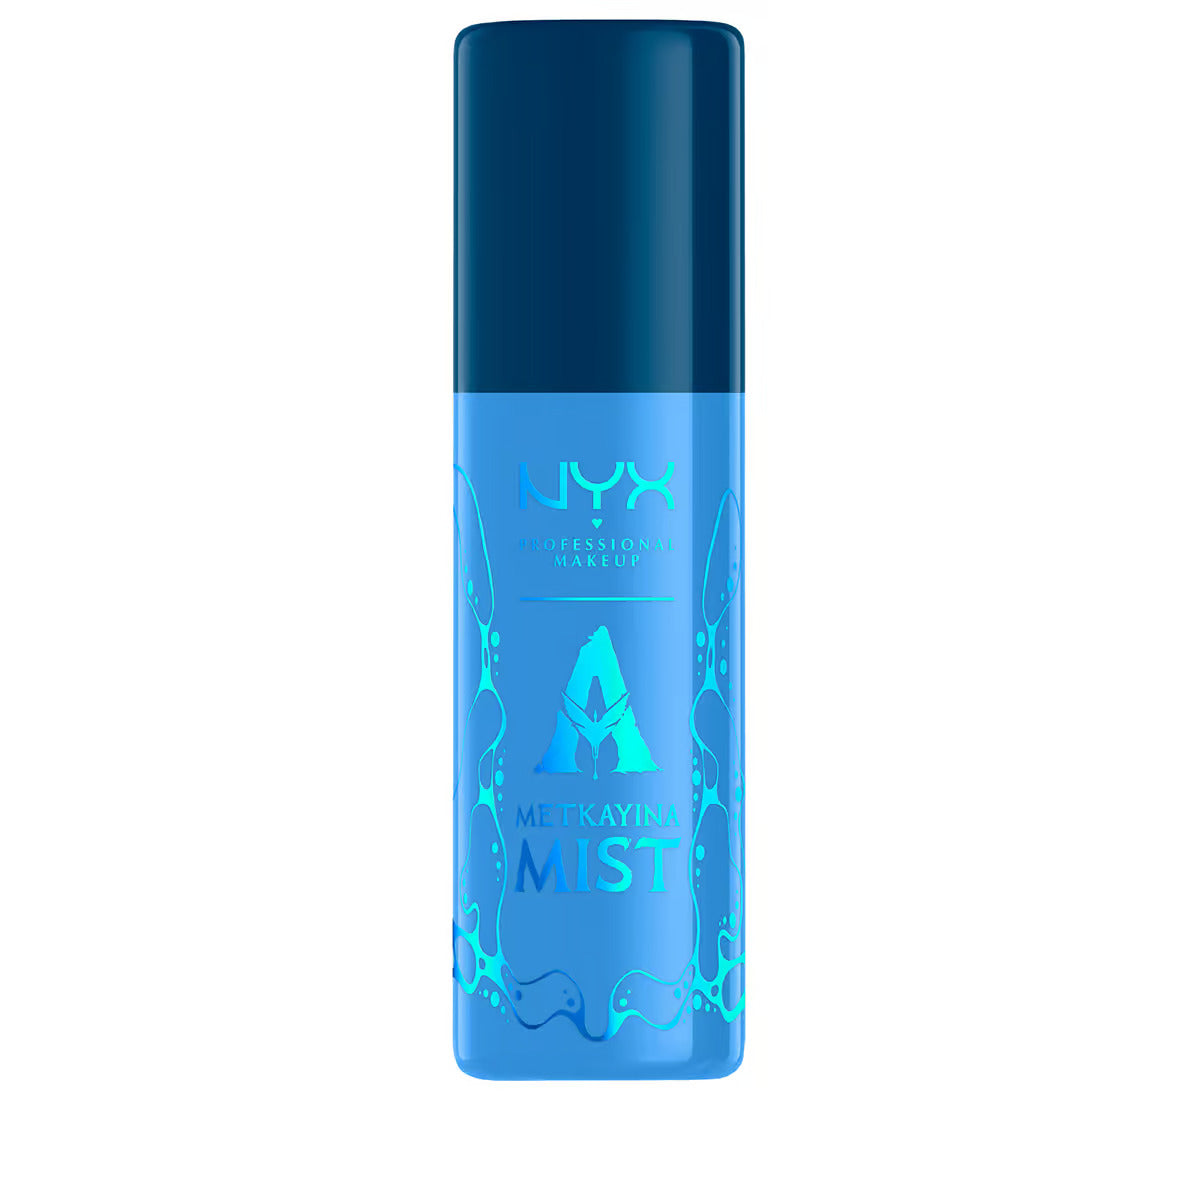 NYX Mist Setting Spray - Avatar 2 Metkayina